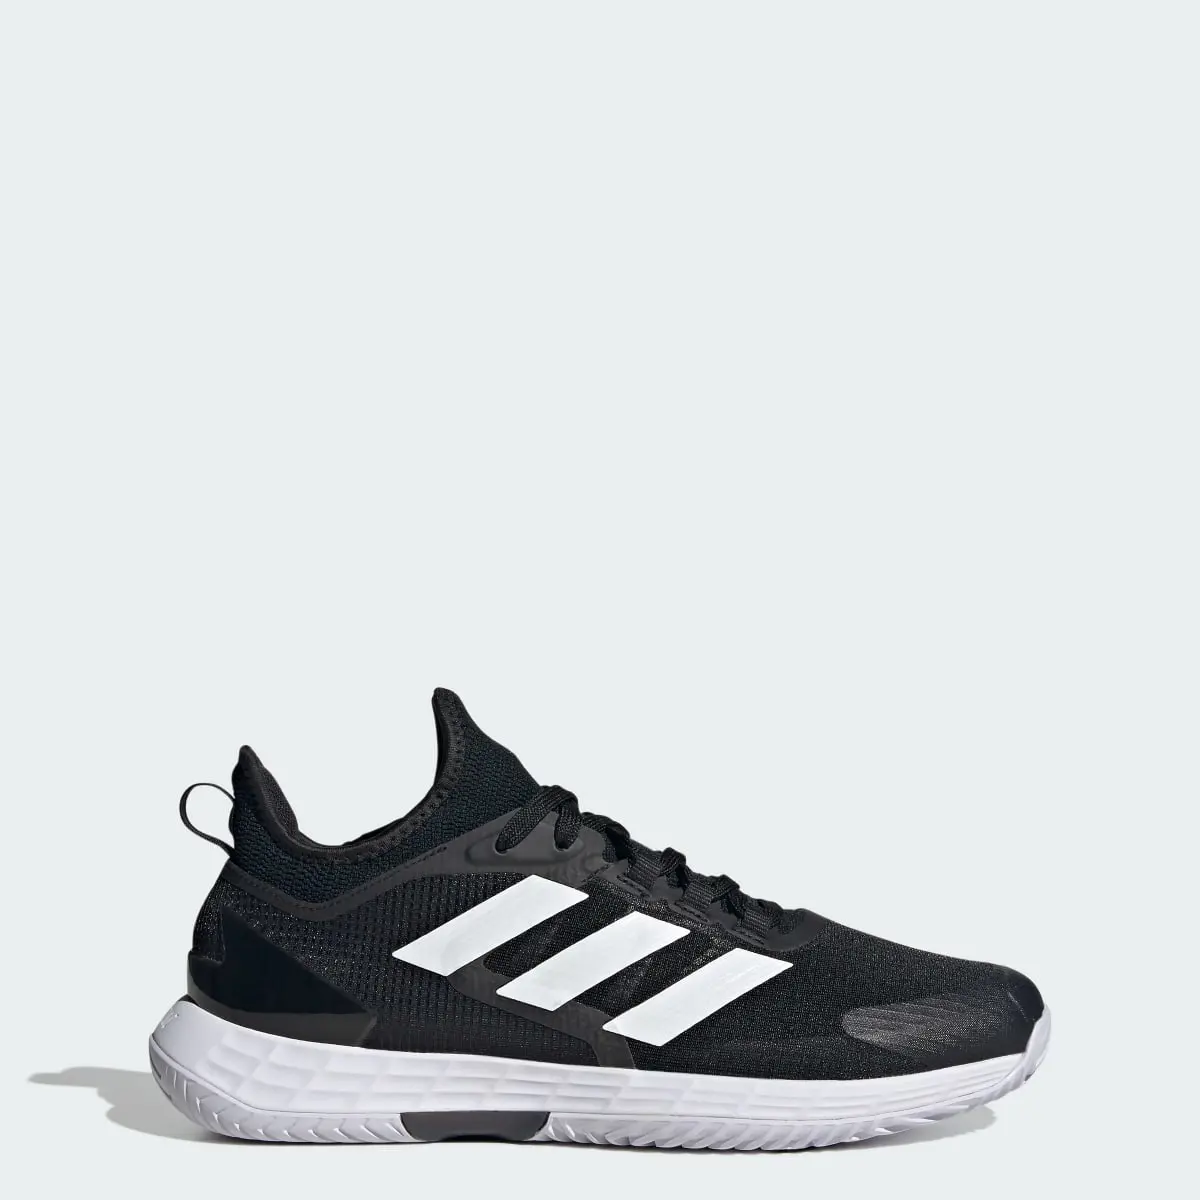 Adidas Adizero Ubersonic 4.1 Tennis Shoes. 1